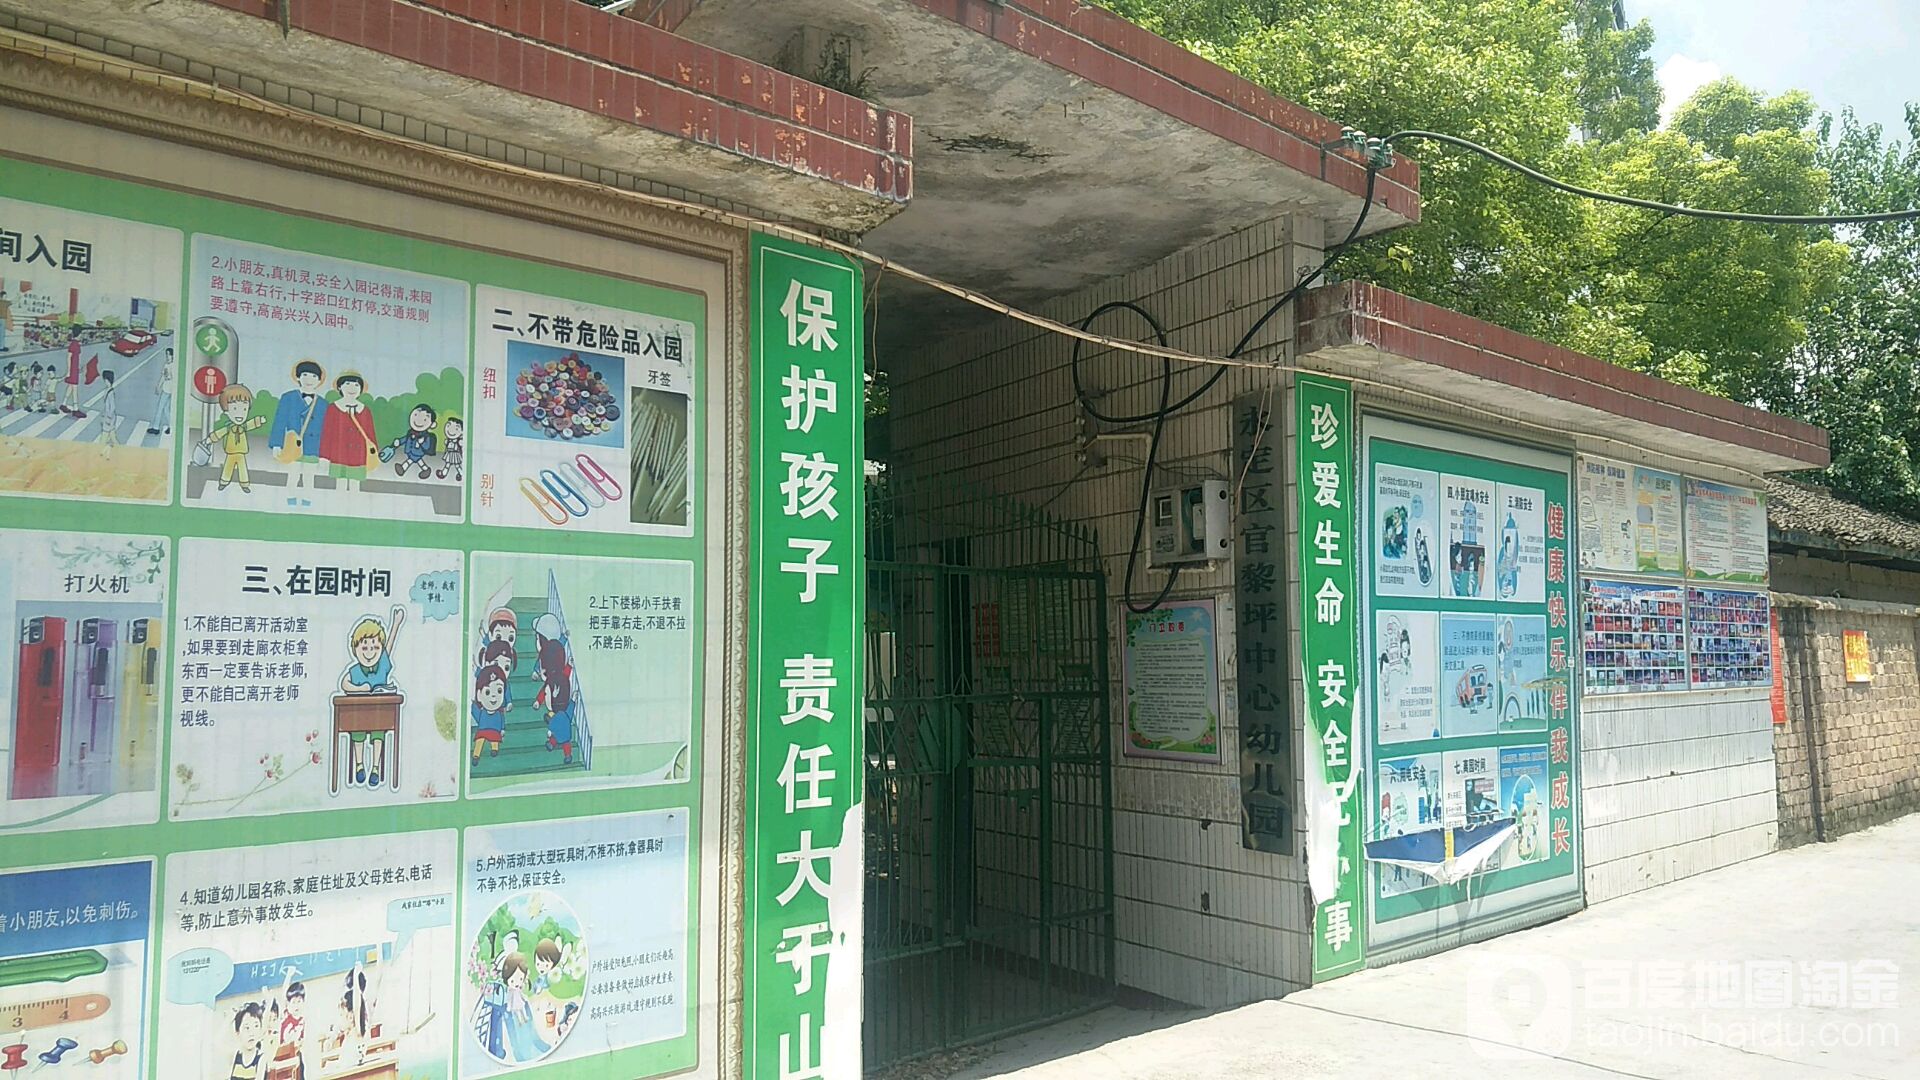 官黎坪中心幼儿园